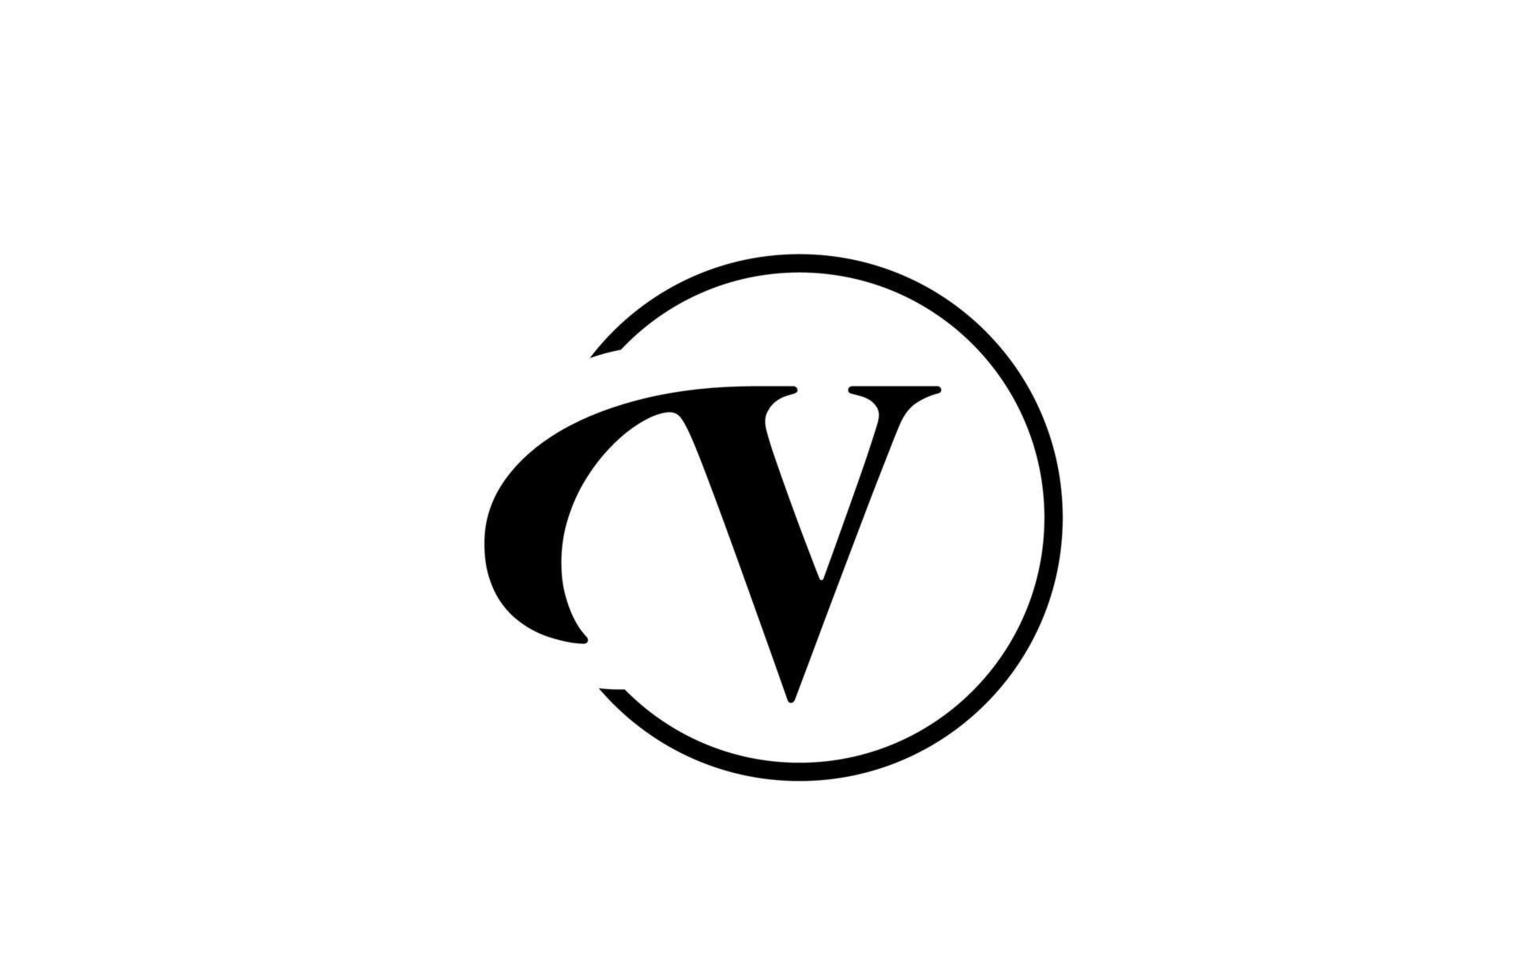 v ícone do logotipo da letra do alfabeto na cor preto e branco simples. design de círculo elegante e criativo para negócios e empresas vetor